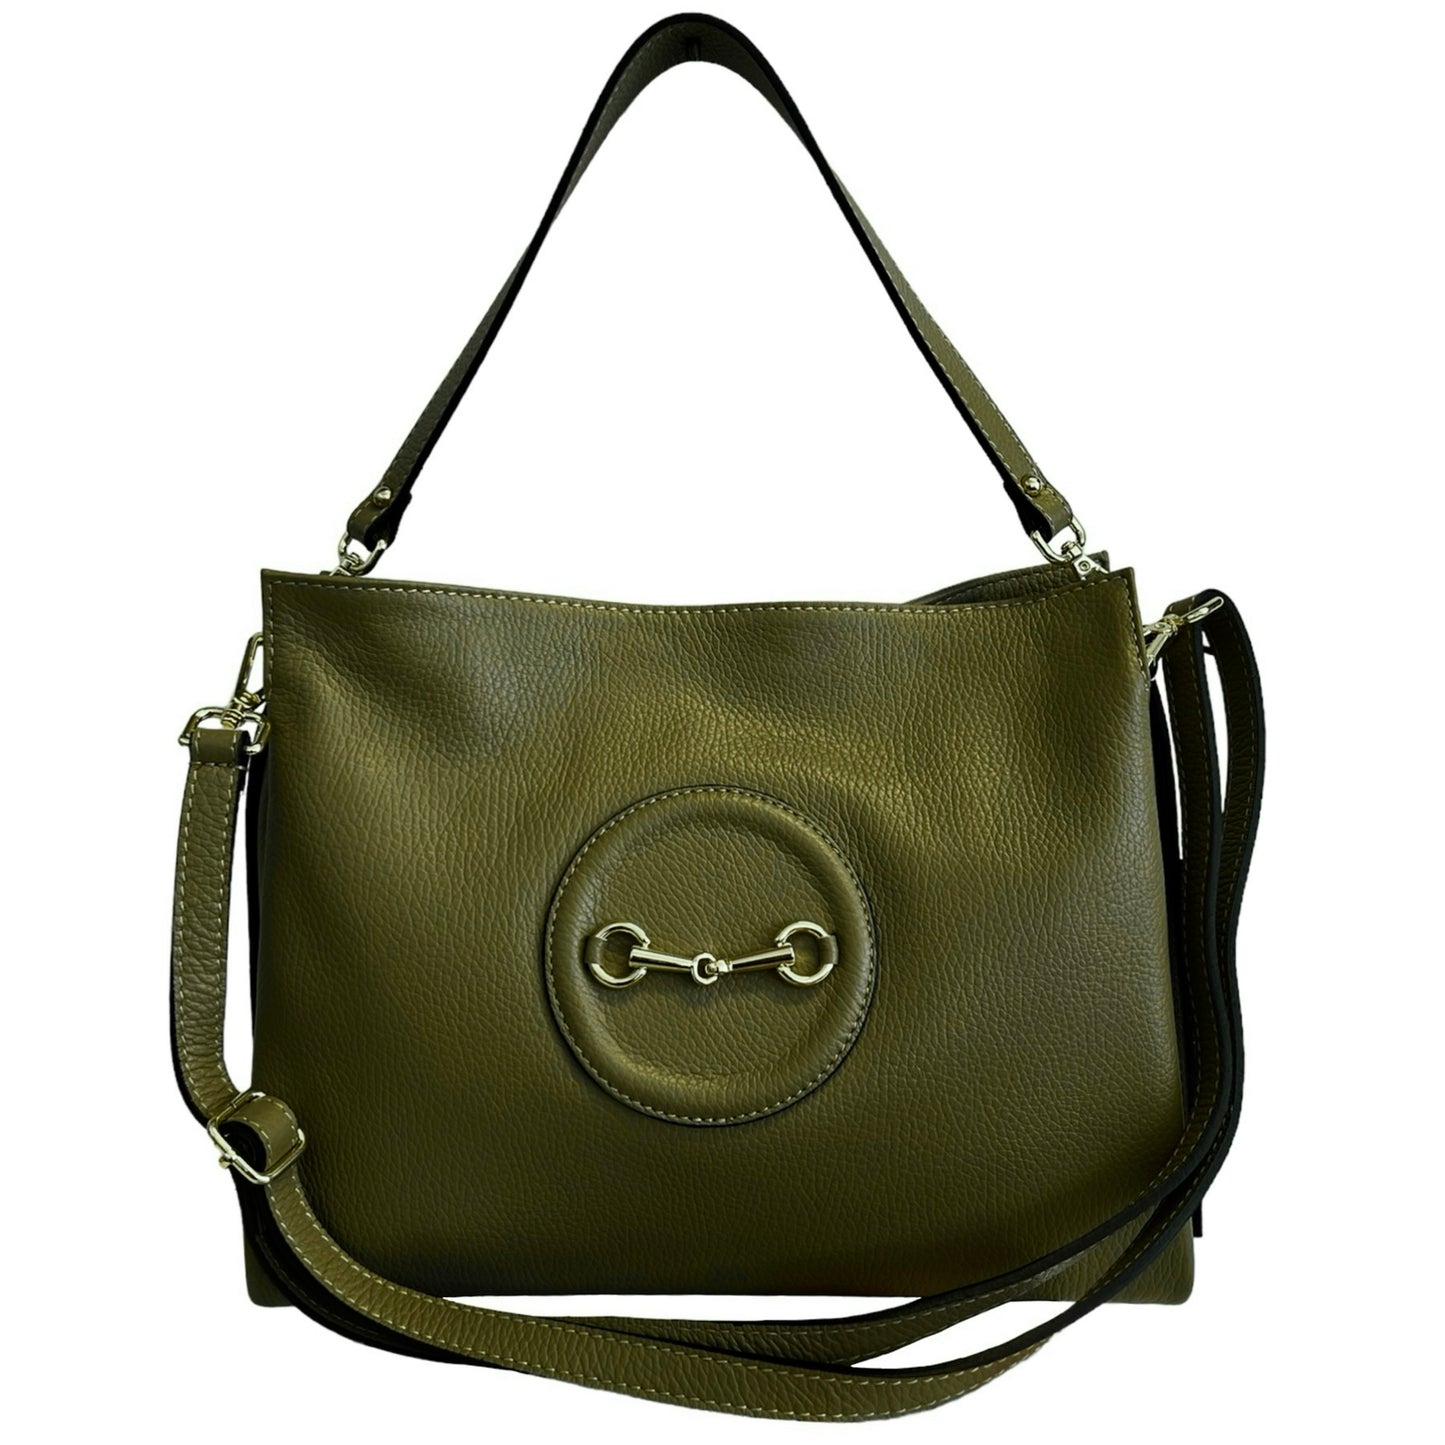 Modarno Damen Umhänge-/Handtasche im Stil einer Metallklammer